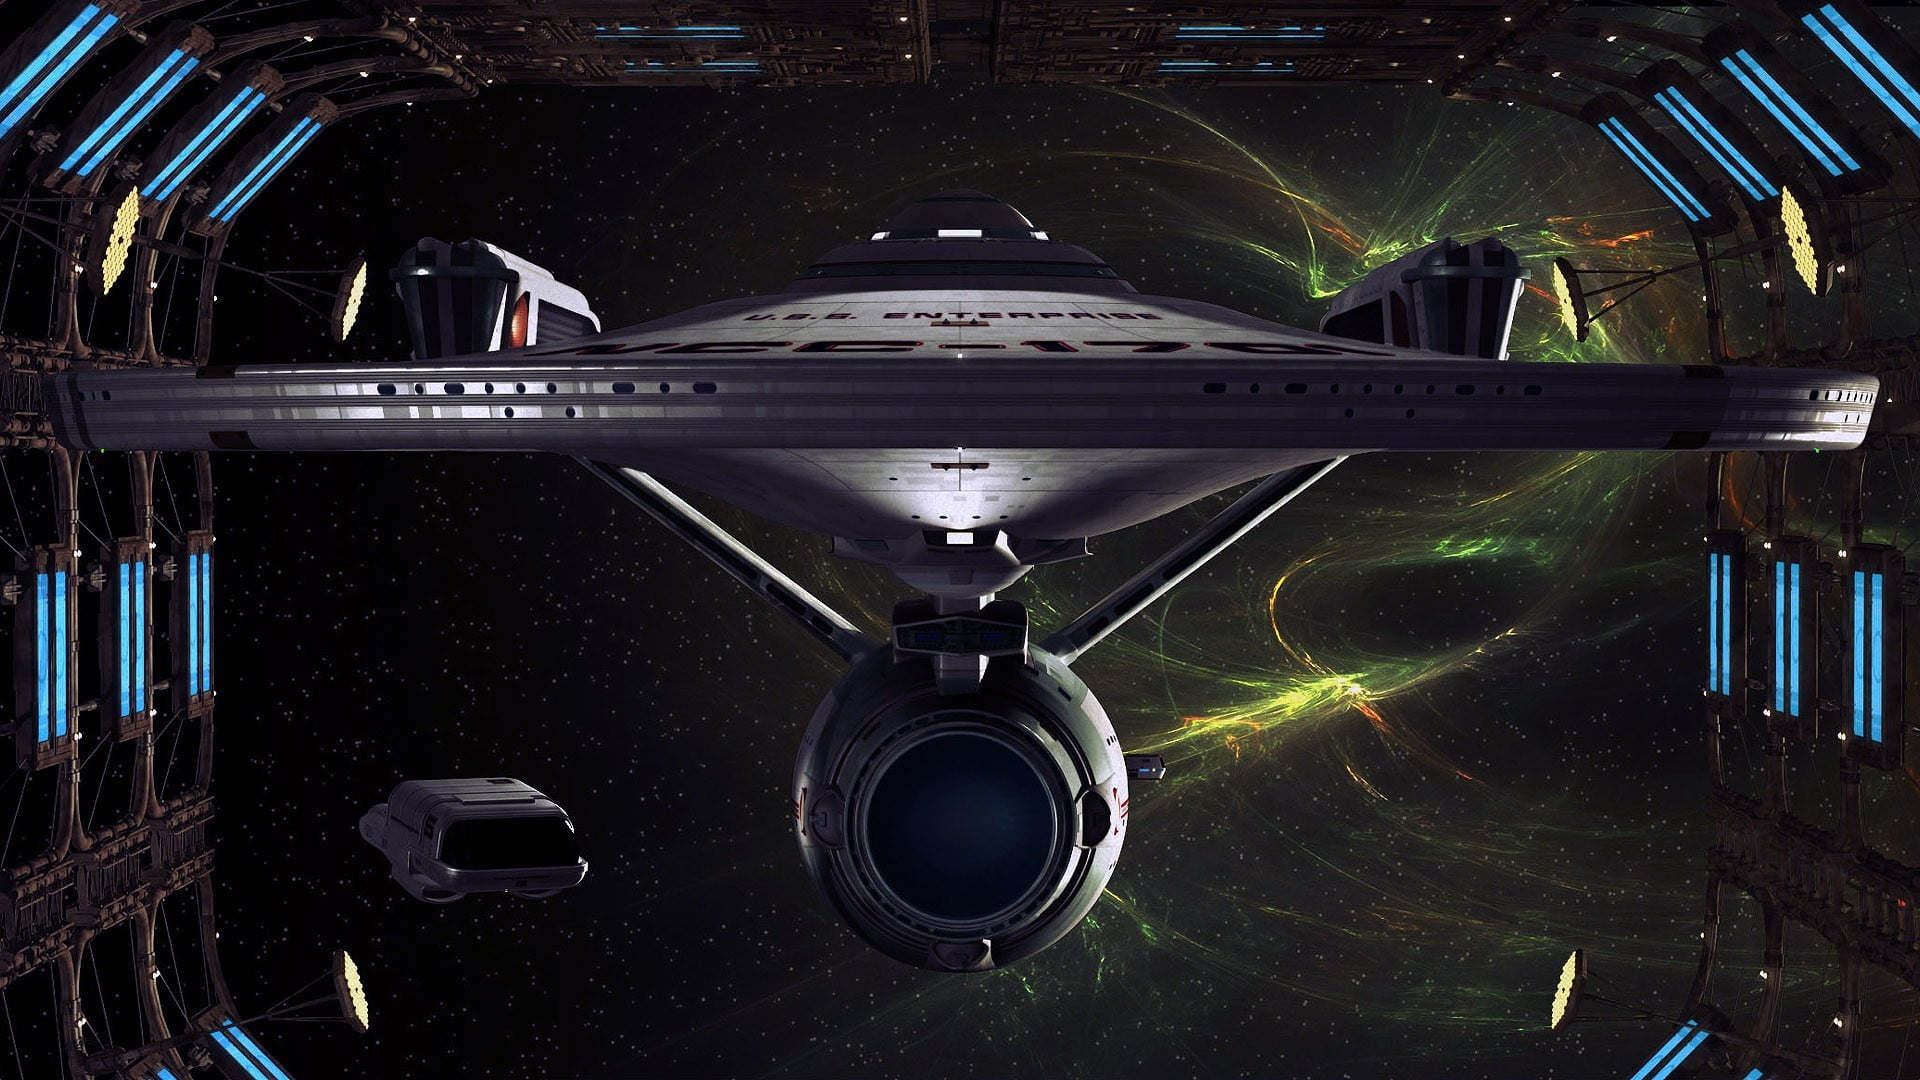 Star Trek Enterprise digital wallpaper, artwork, Star Trek